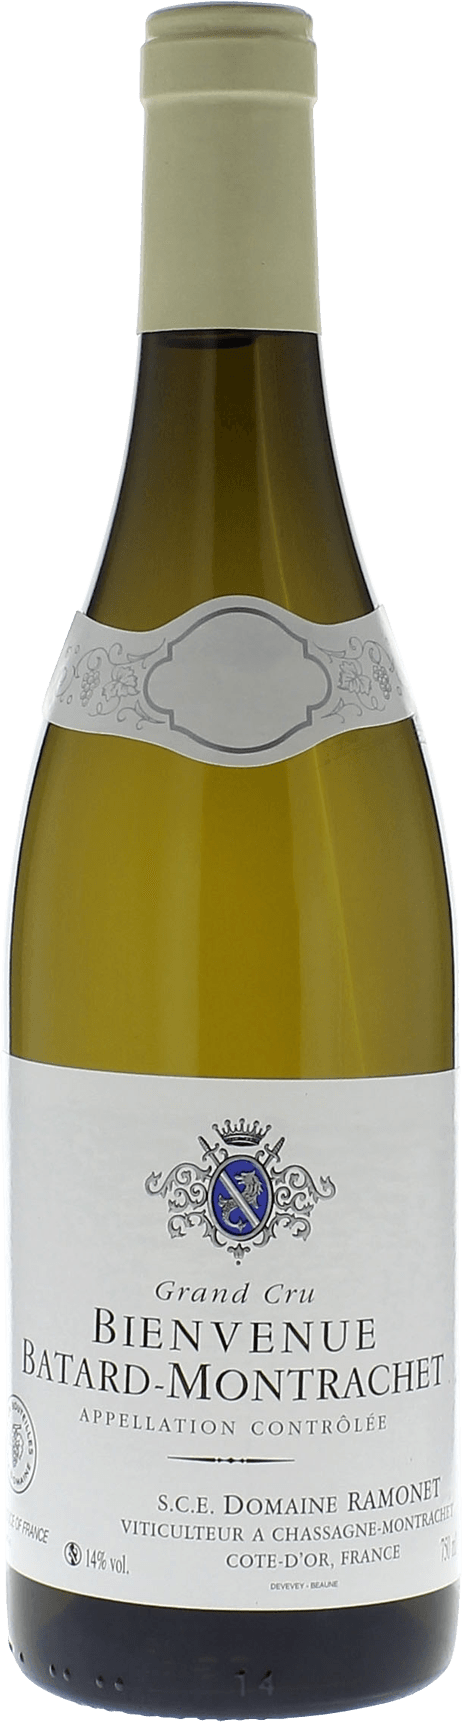 Bienvenues batard montrachet 2016 Domaine RAMONET, Bourgogne blanc